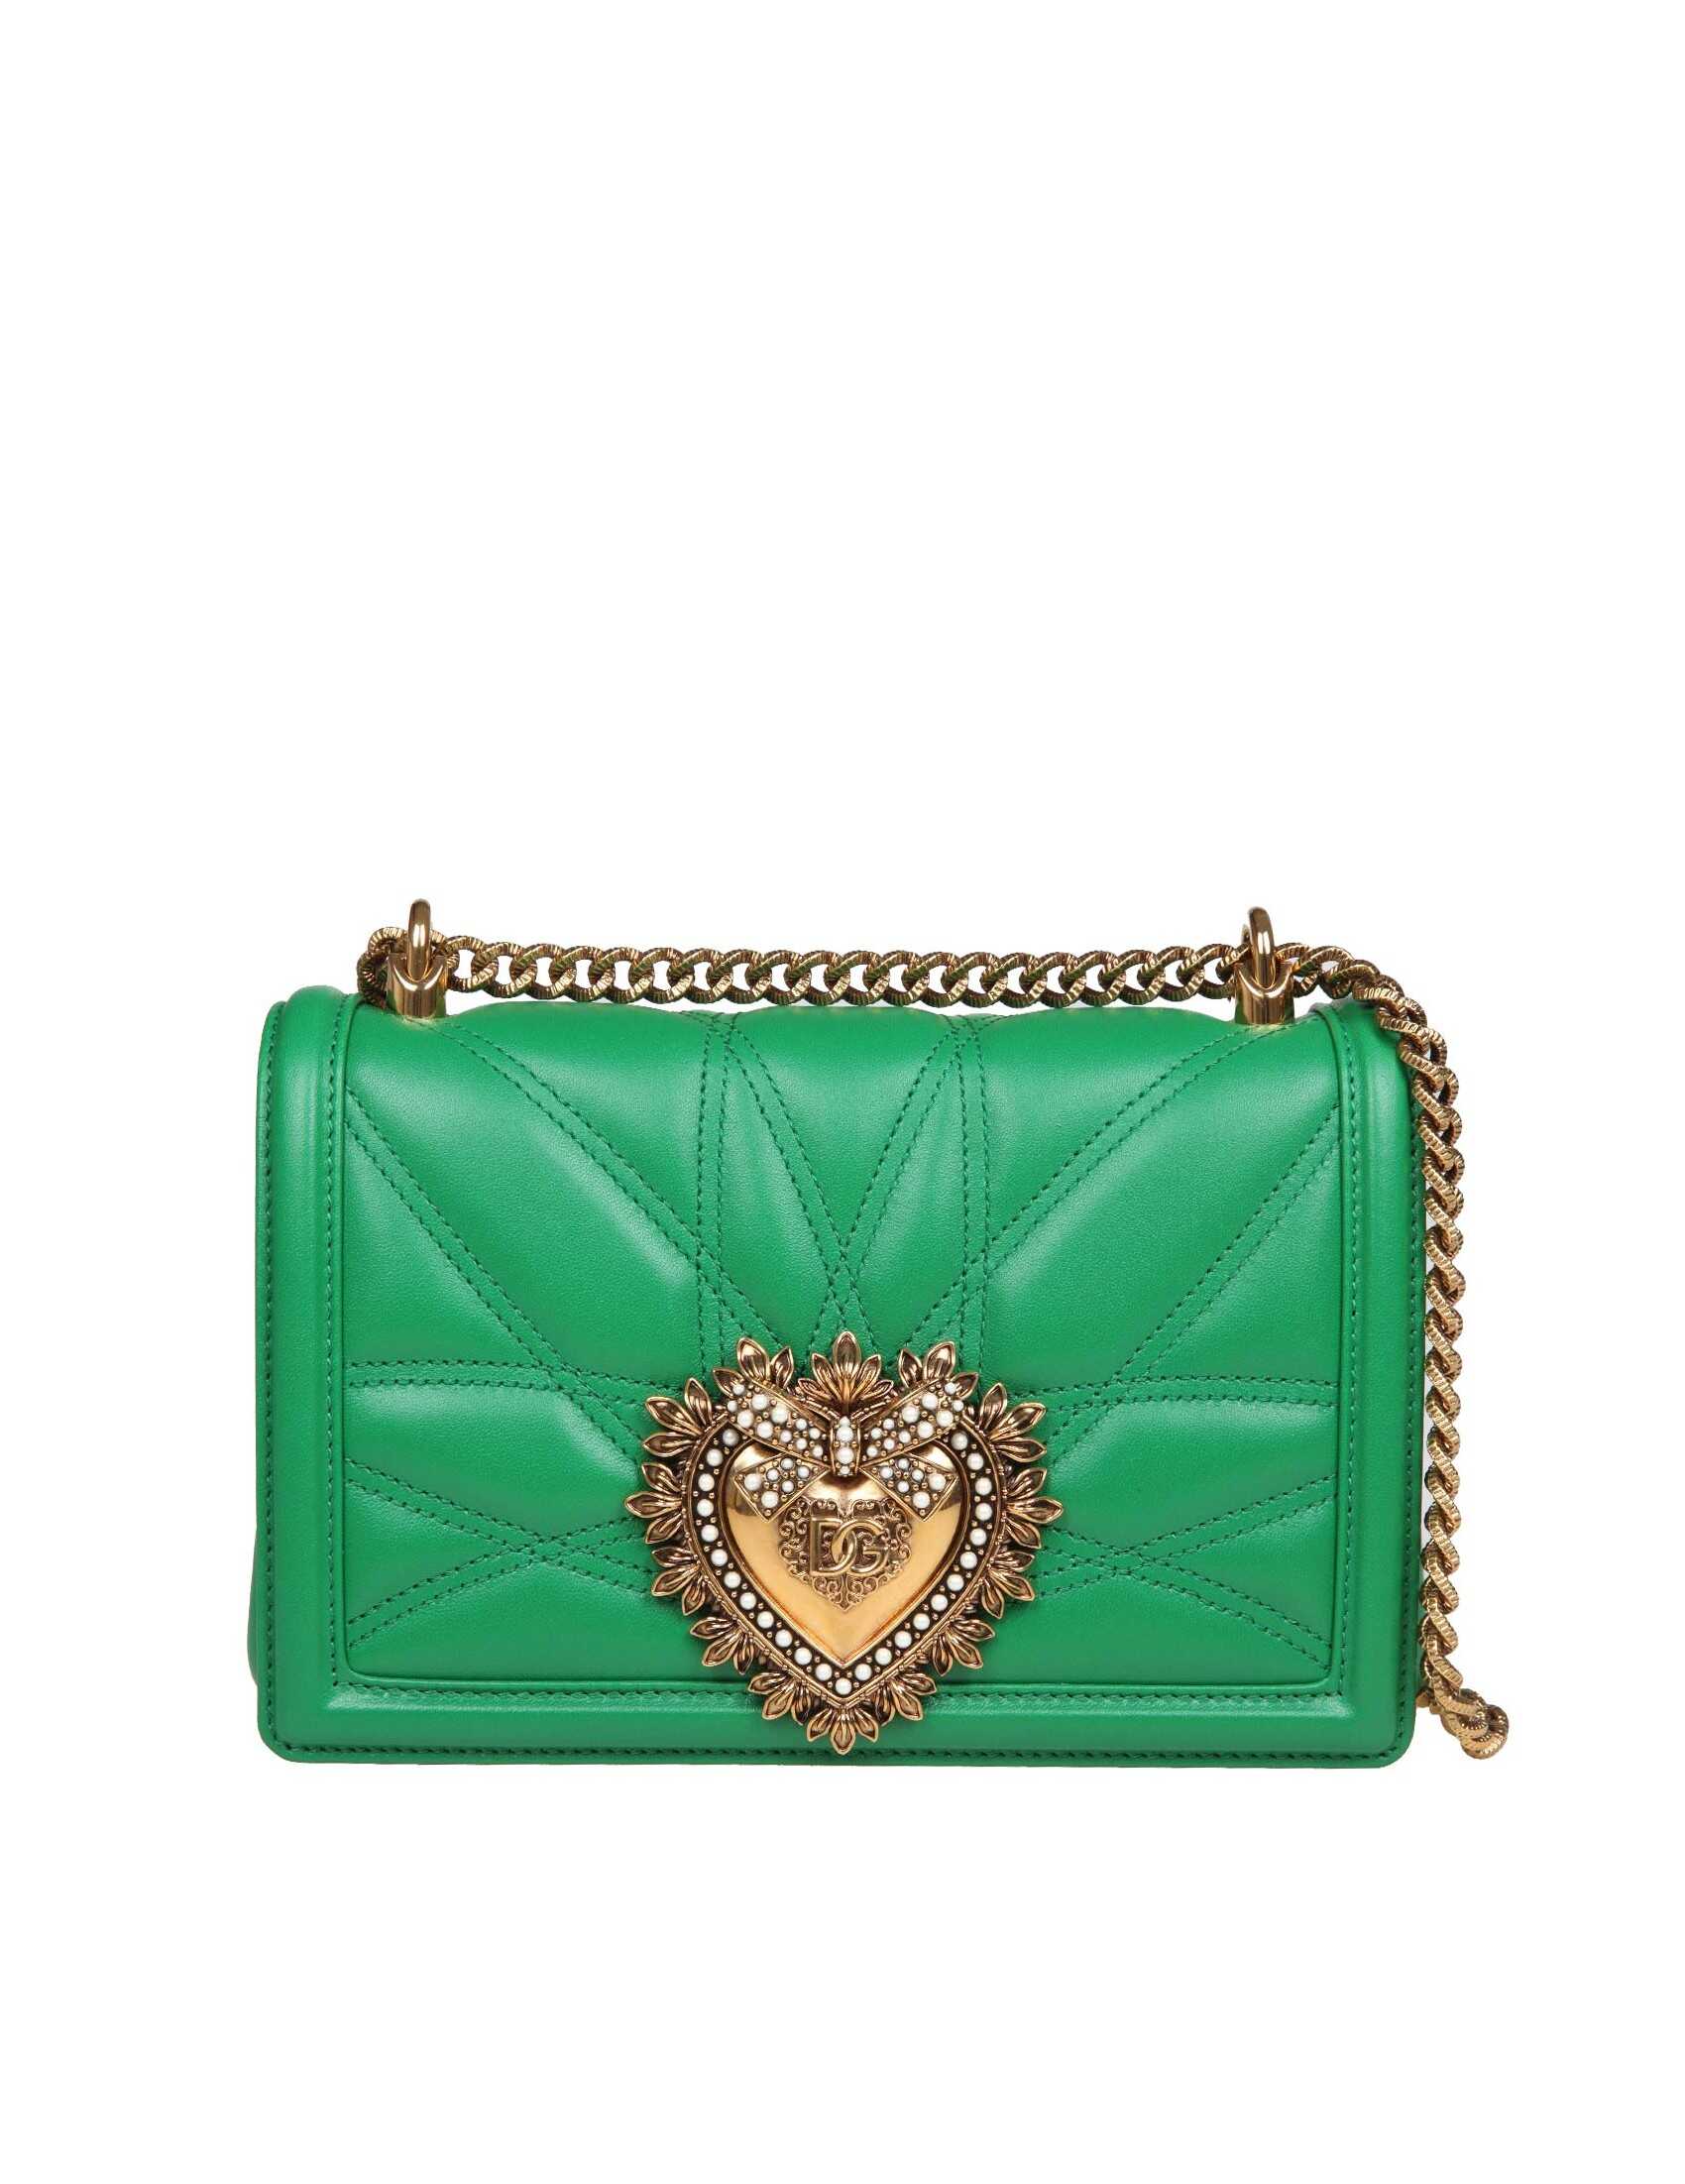 Dolce & Gabbana Dolce & gabbana medium devotion bag in green matelassé nappa Green